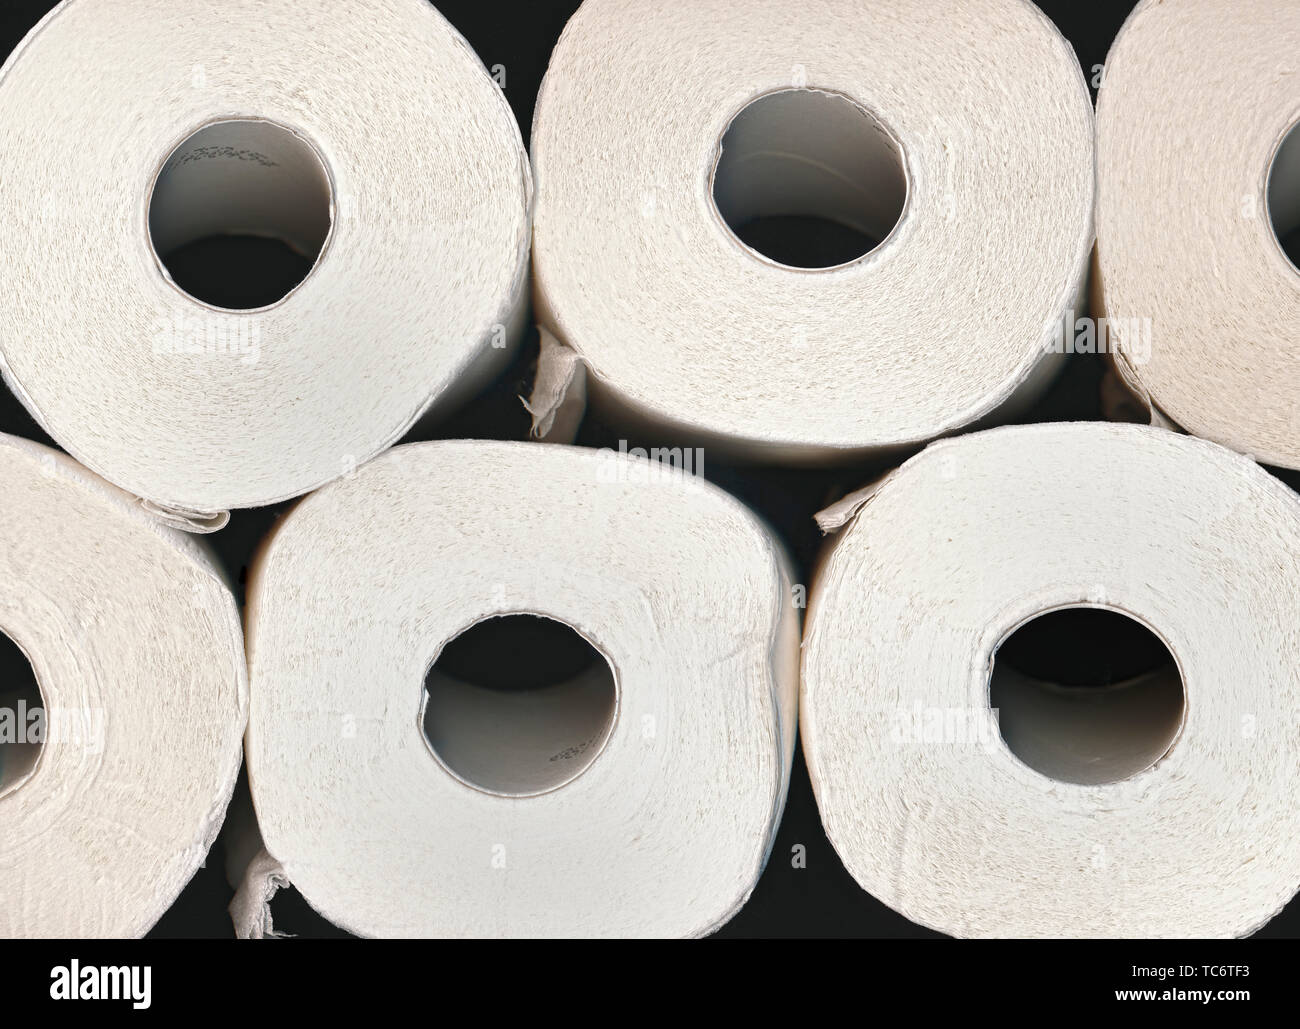 Toilettenpapier, papier toilette Banque D'Images